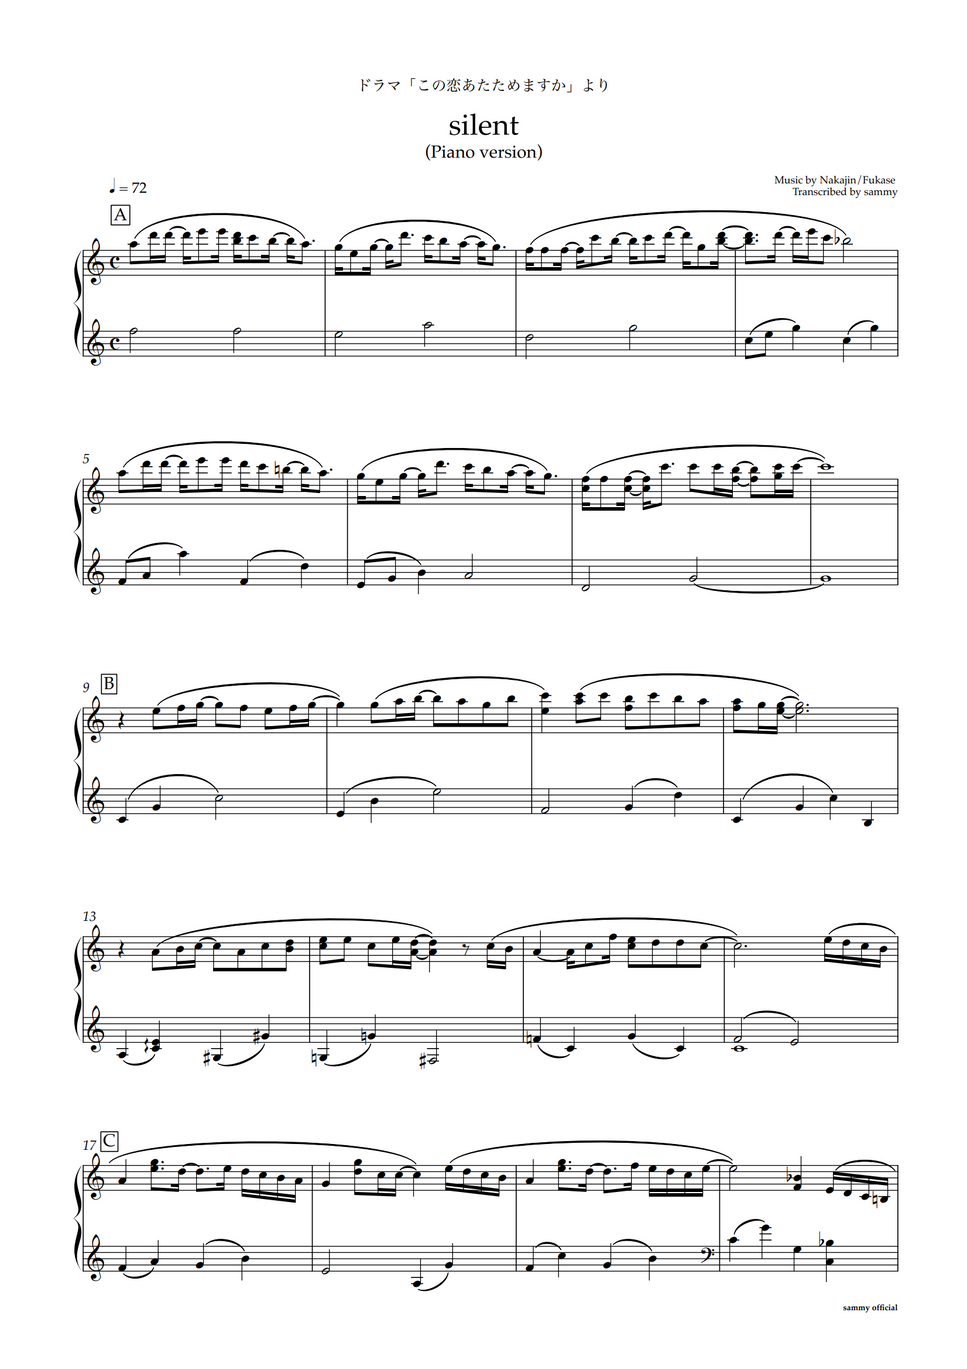 SEKAI NO OWARI - silent -Piano Version- by sammy